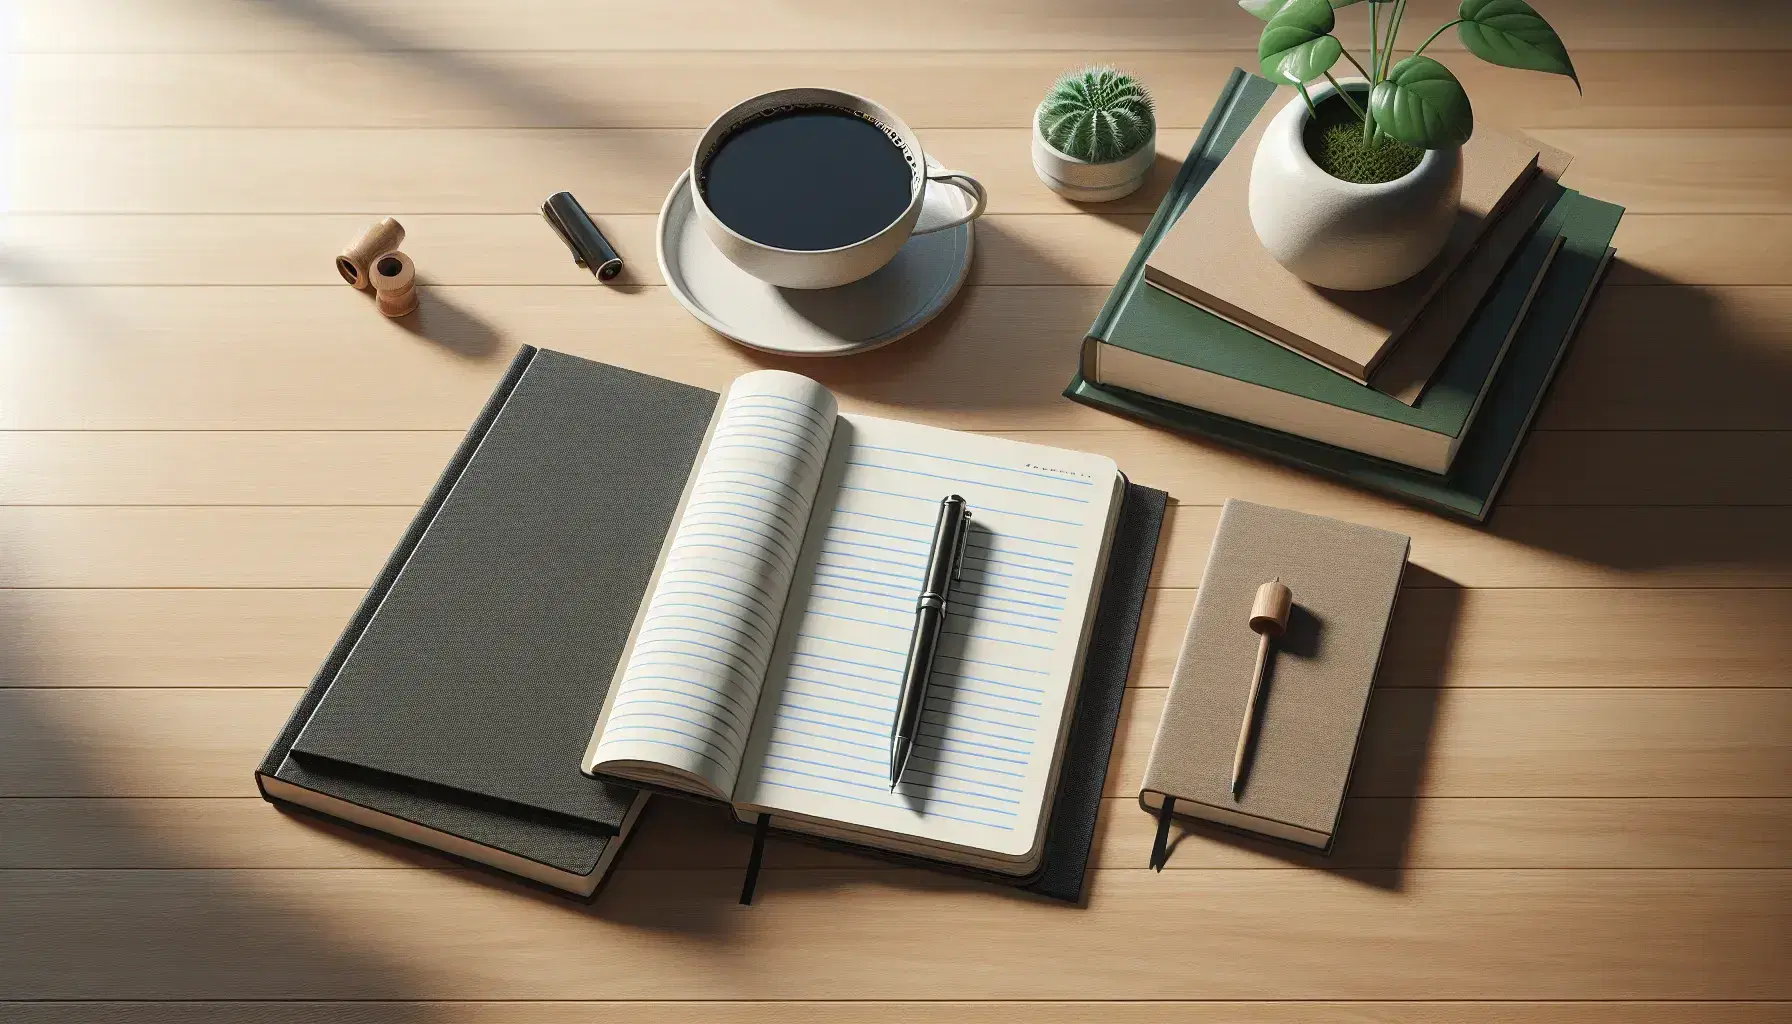 Mesa de madera clara con cuaderno abierto, libro verde, pluma negra y planta en maceta blanca junto a taza de café.